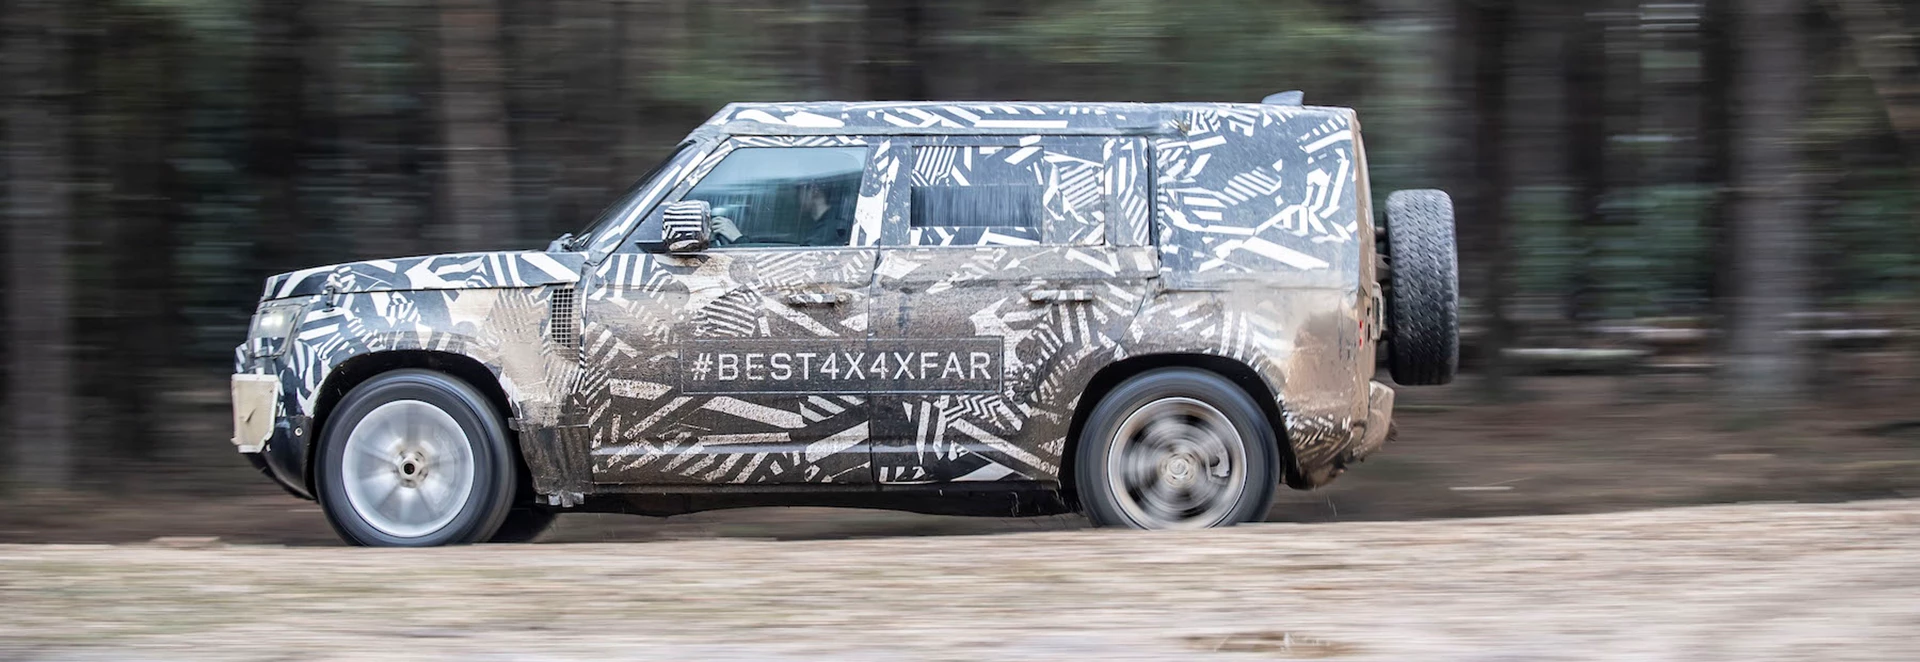 Land Rover Defender confirmed for Frankfurt Motor Show unveil